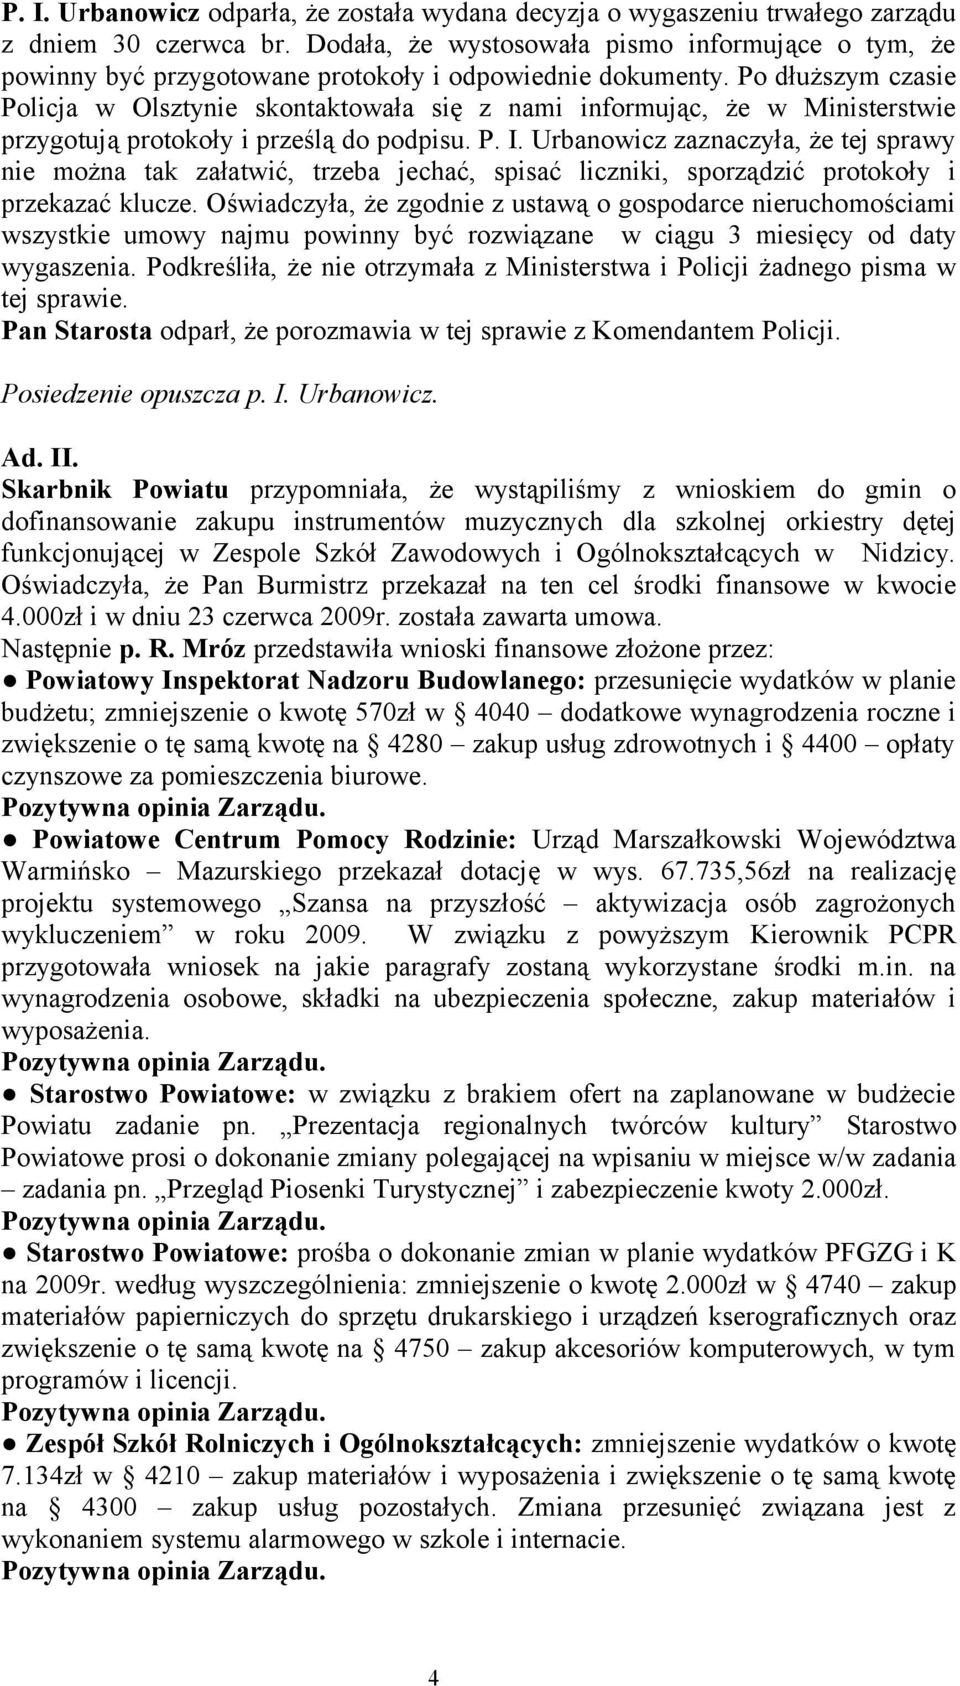 Po dłuższym czasie Policja w Olsztynie skontaktowała się z nami informując, że w Ministerstwie przygotują protokoły i prześlą do podpisu. P. I.